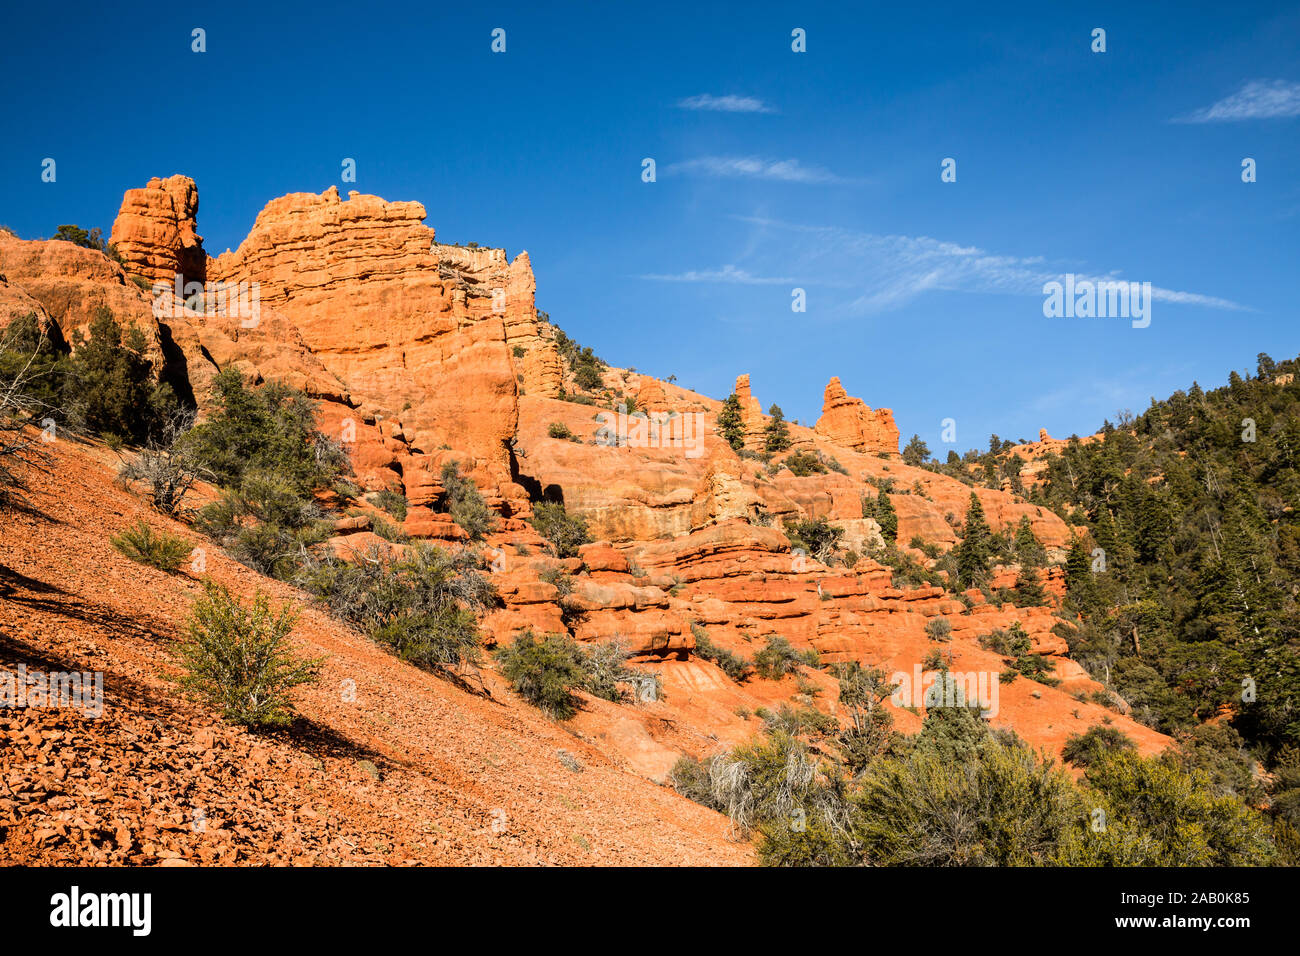 Canyon di cedro, che conduce da Cedar City, Utah, capi nel deserto e conduce a molti il Red Rock Canyon come questo. Foto Stock